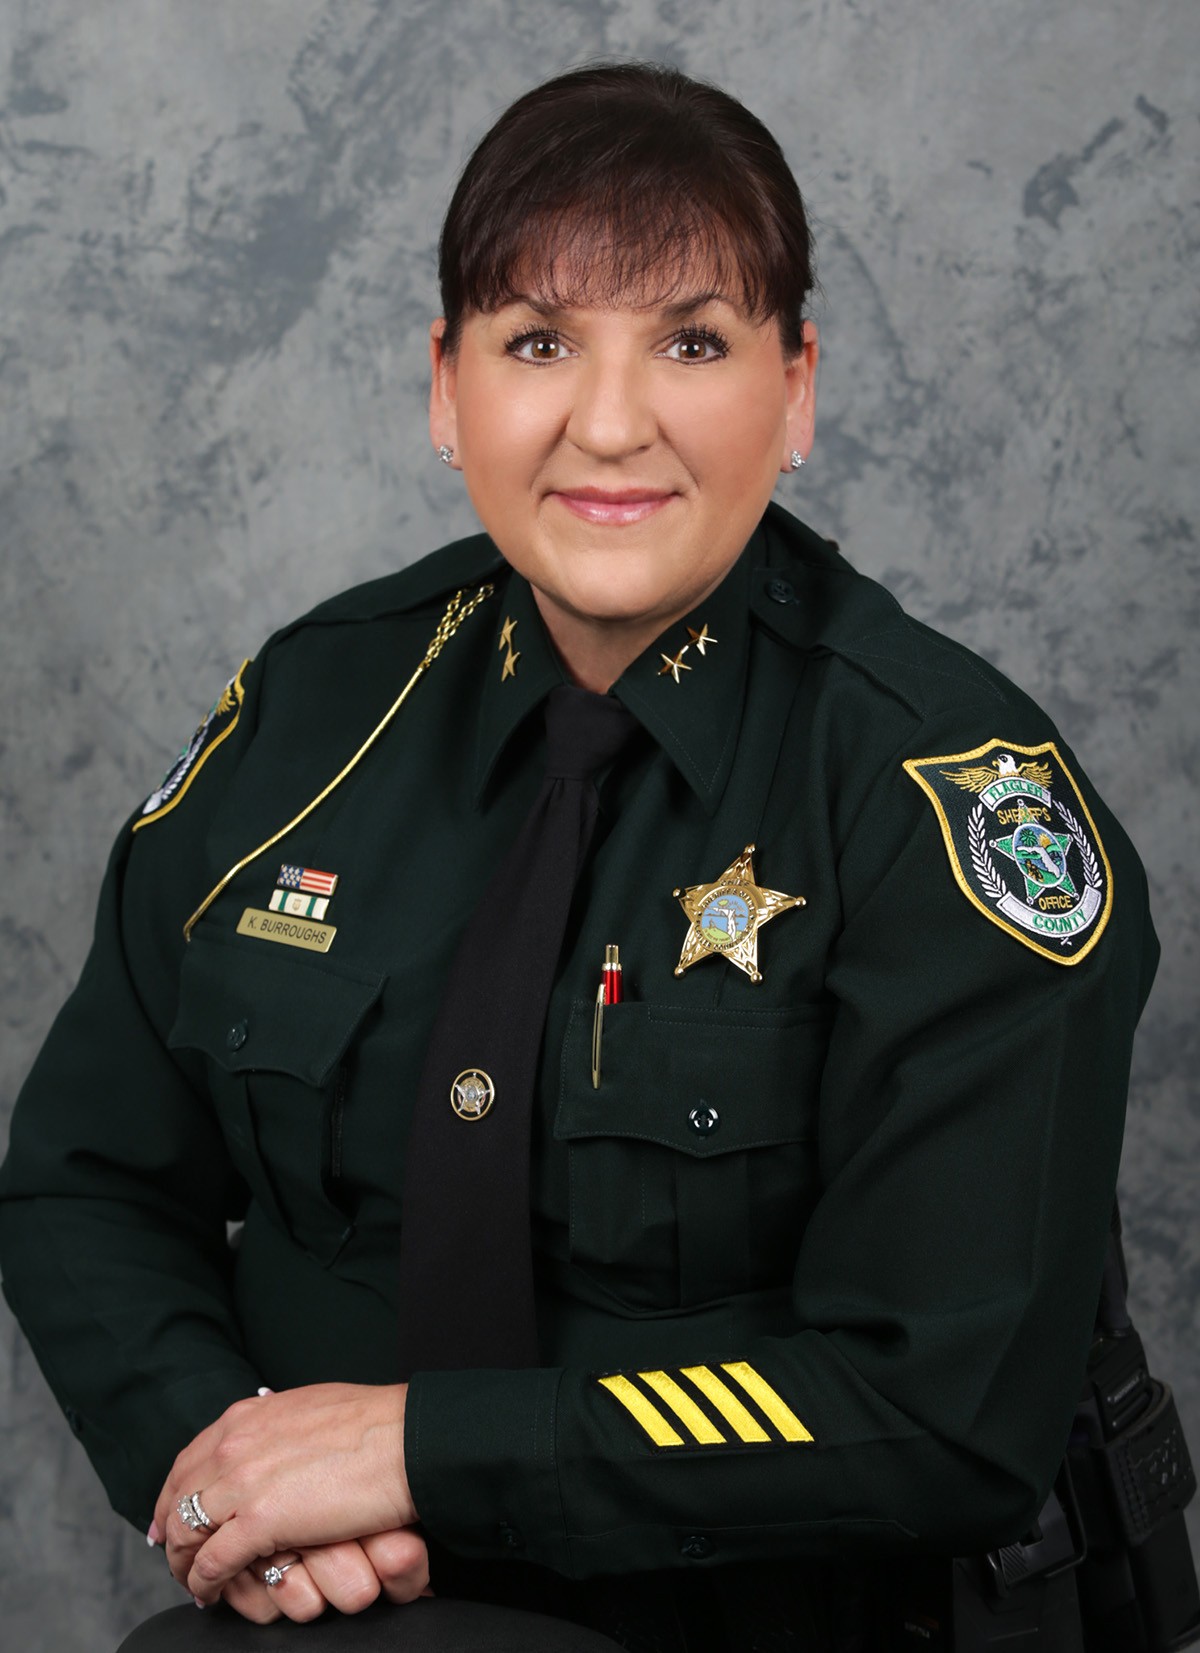 Portrait of Chief Kim Burroughs